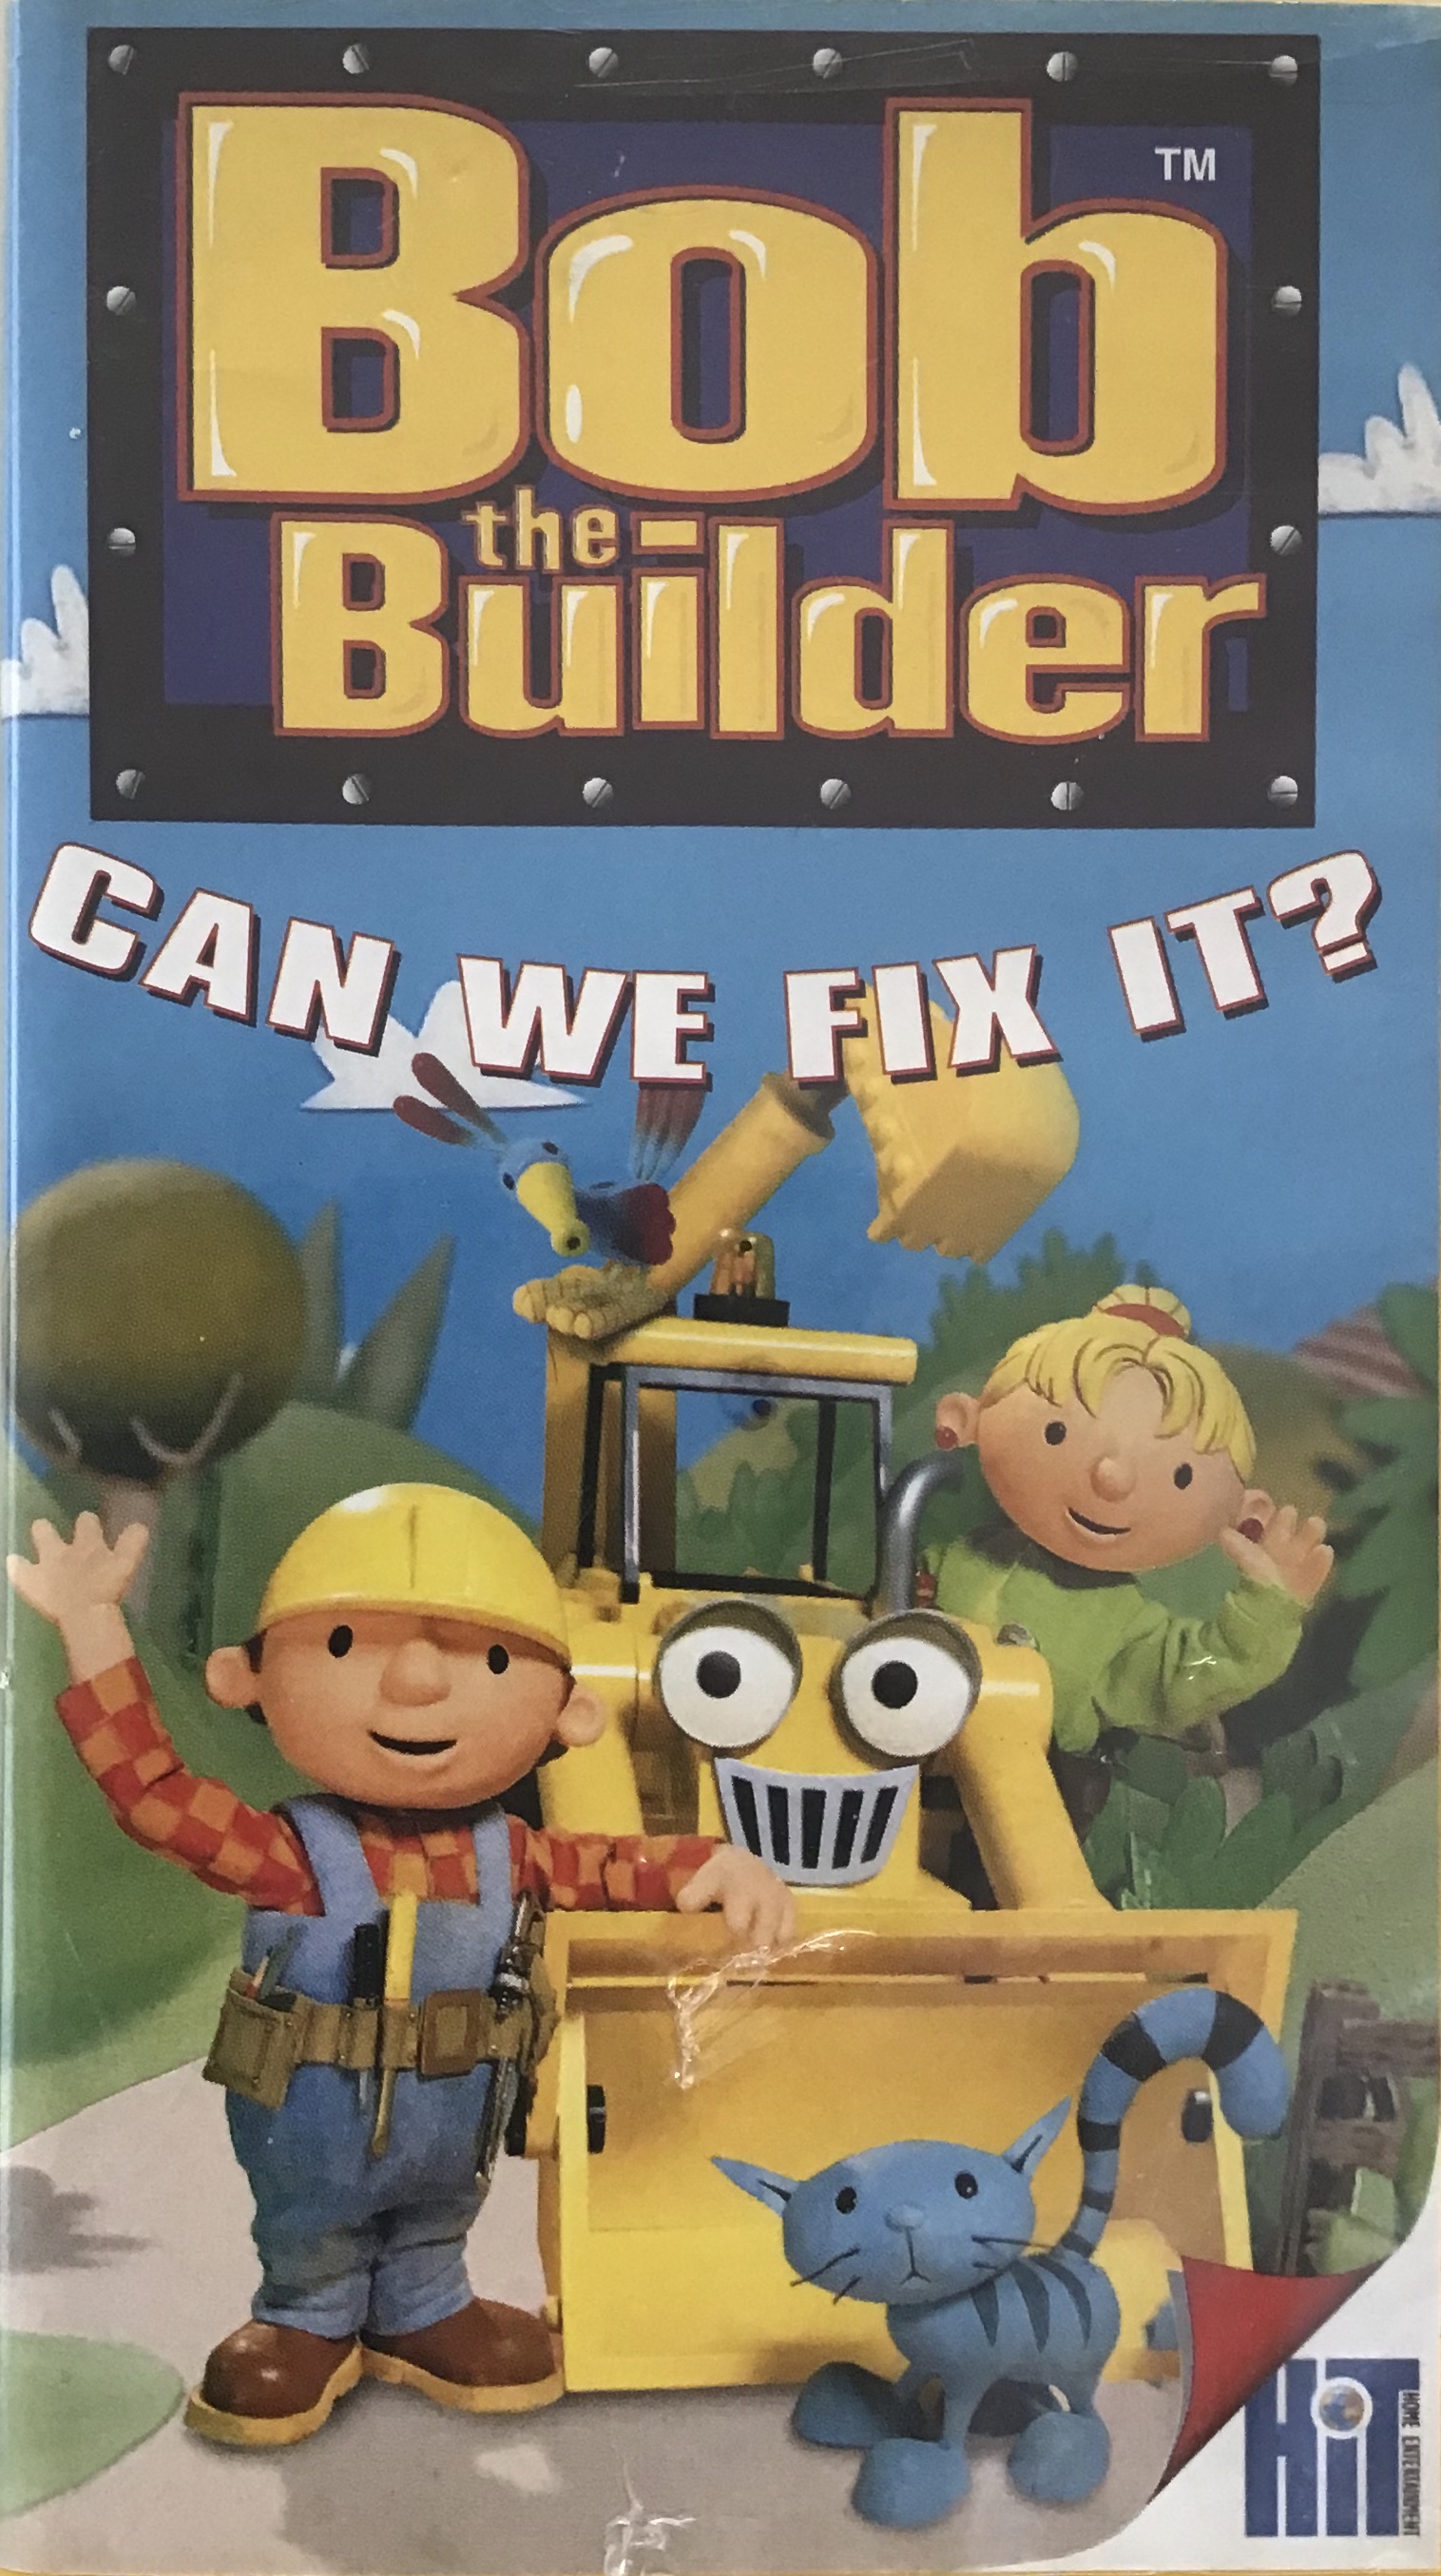 Erleuchten Stuhl Keller bob the builder can we fix it dvd Stern ...